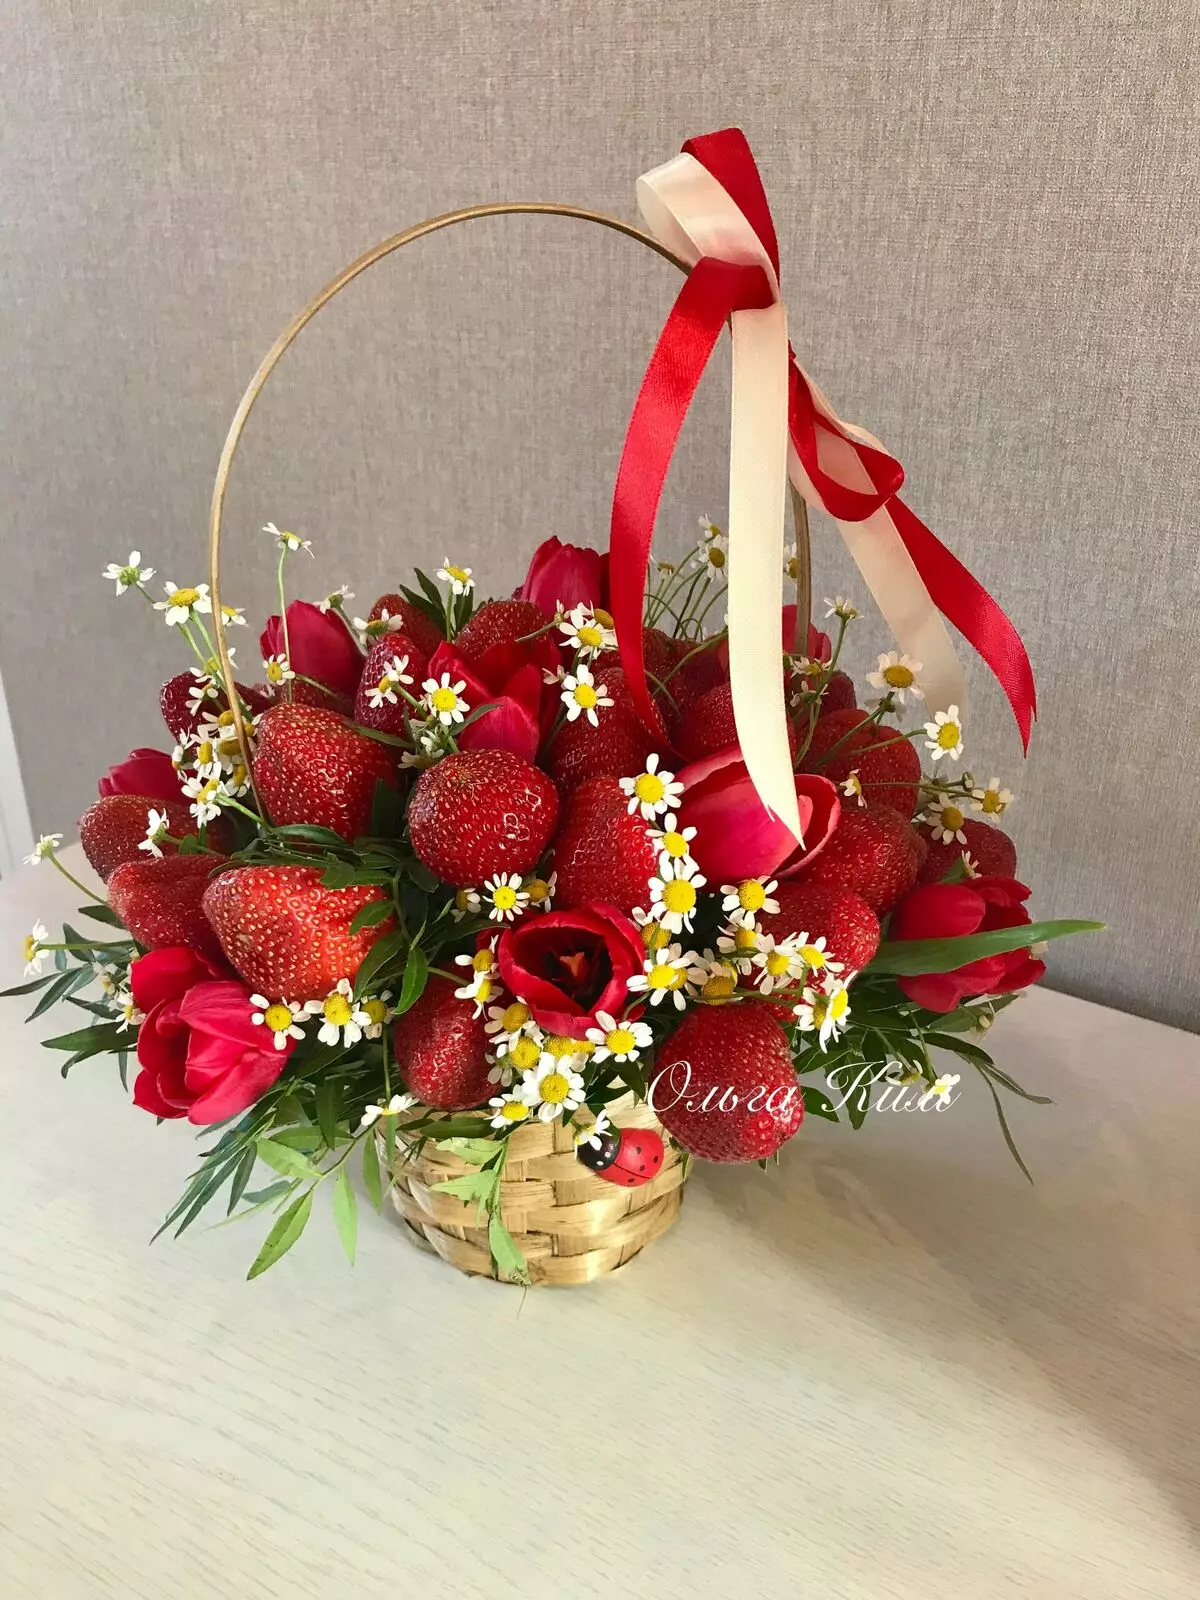 ດອກໄມ້ສະຕໍເບີຣີ (36 ຮູບພາບ): ວິທີເຮັດສະຕໍເບີຣີໃນຊັອກໂກແລັດໃນຊຸດຂອງມືຂອງທ່ານຂັ້ນຕອນ? ວິທີການເຮັດເປັນ bouquet strawberry ຂອງ strawberries ແລະສີ? 26653_27